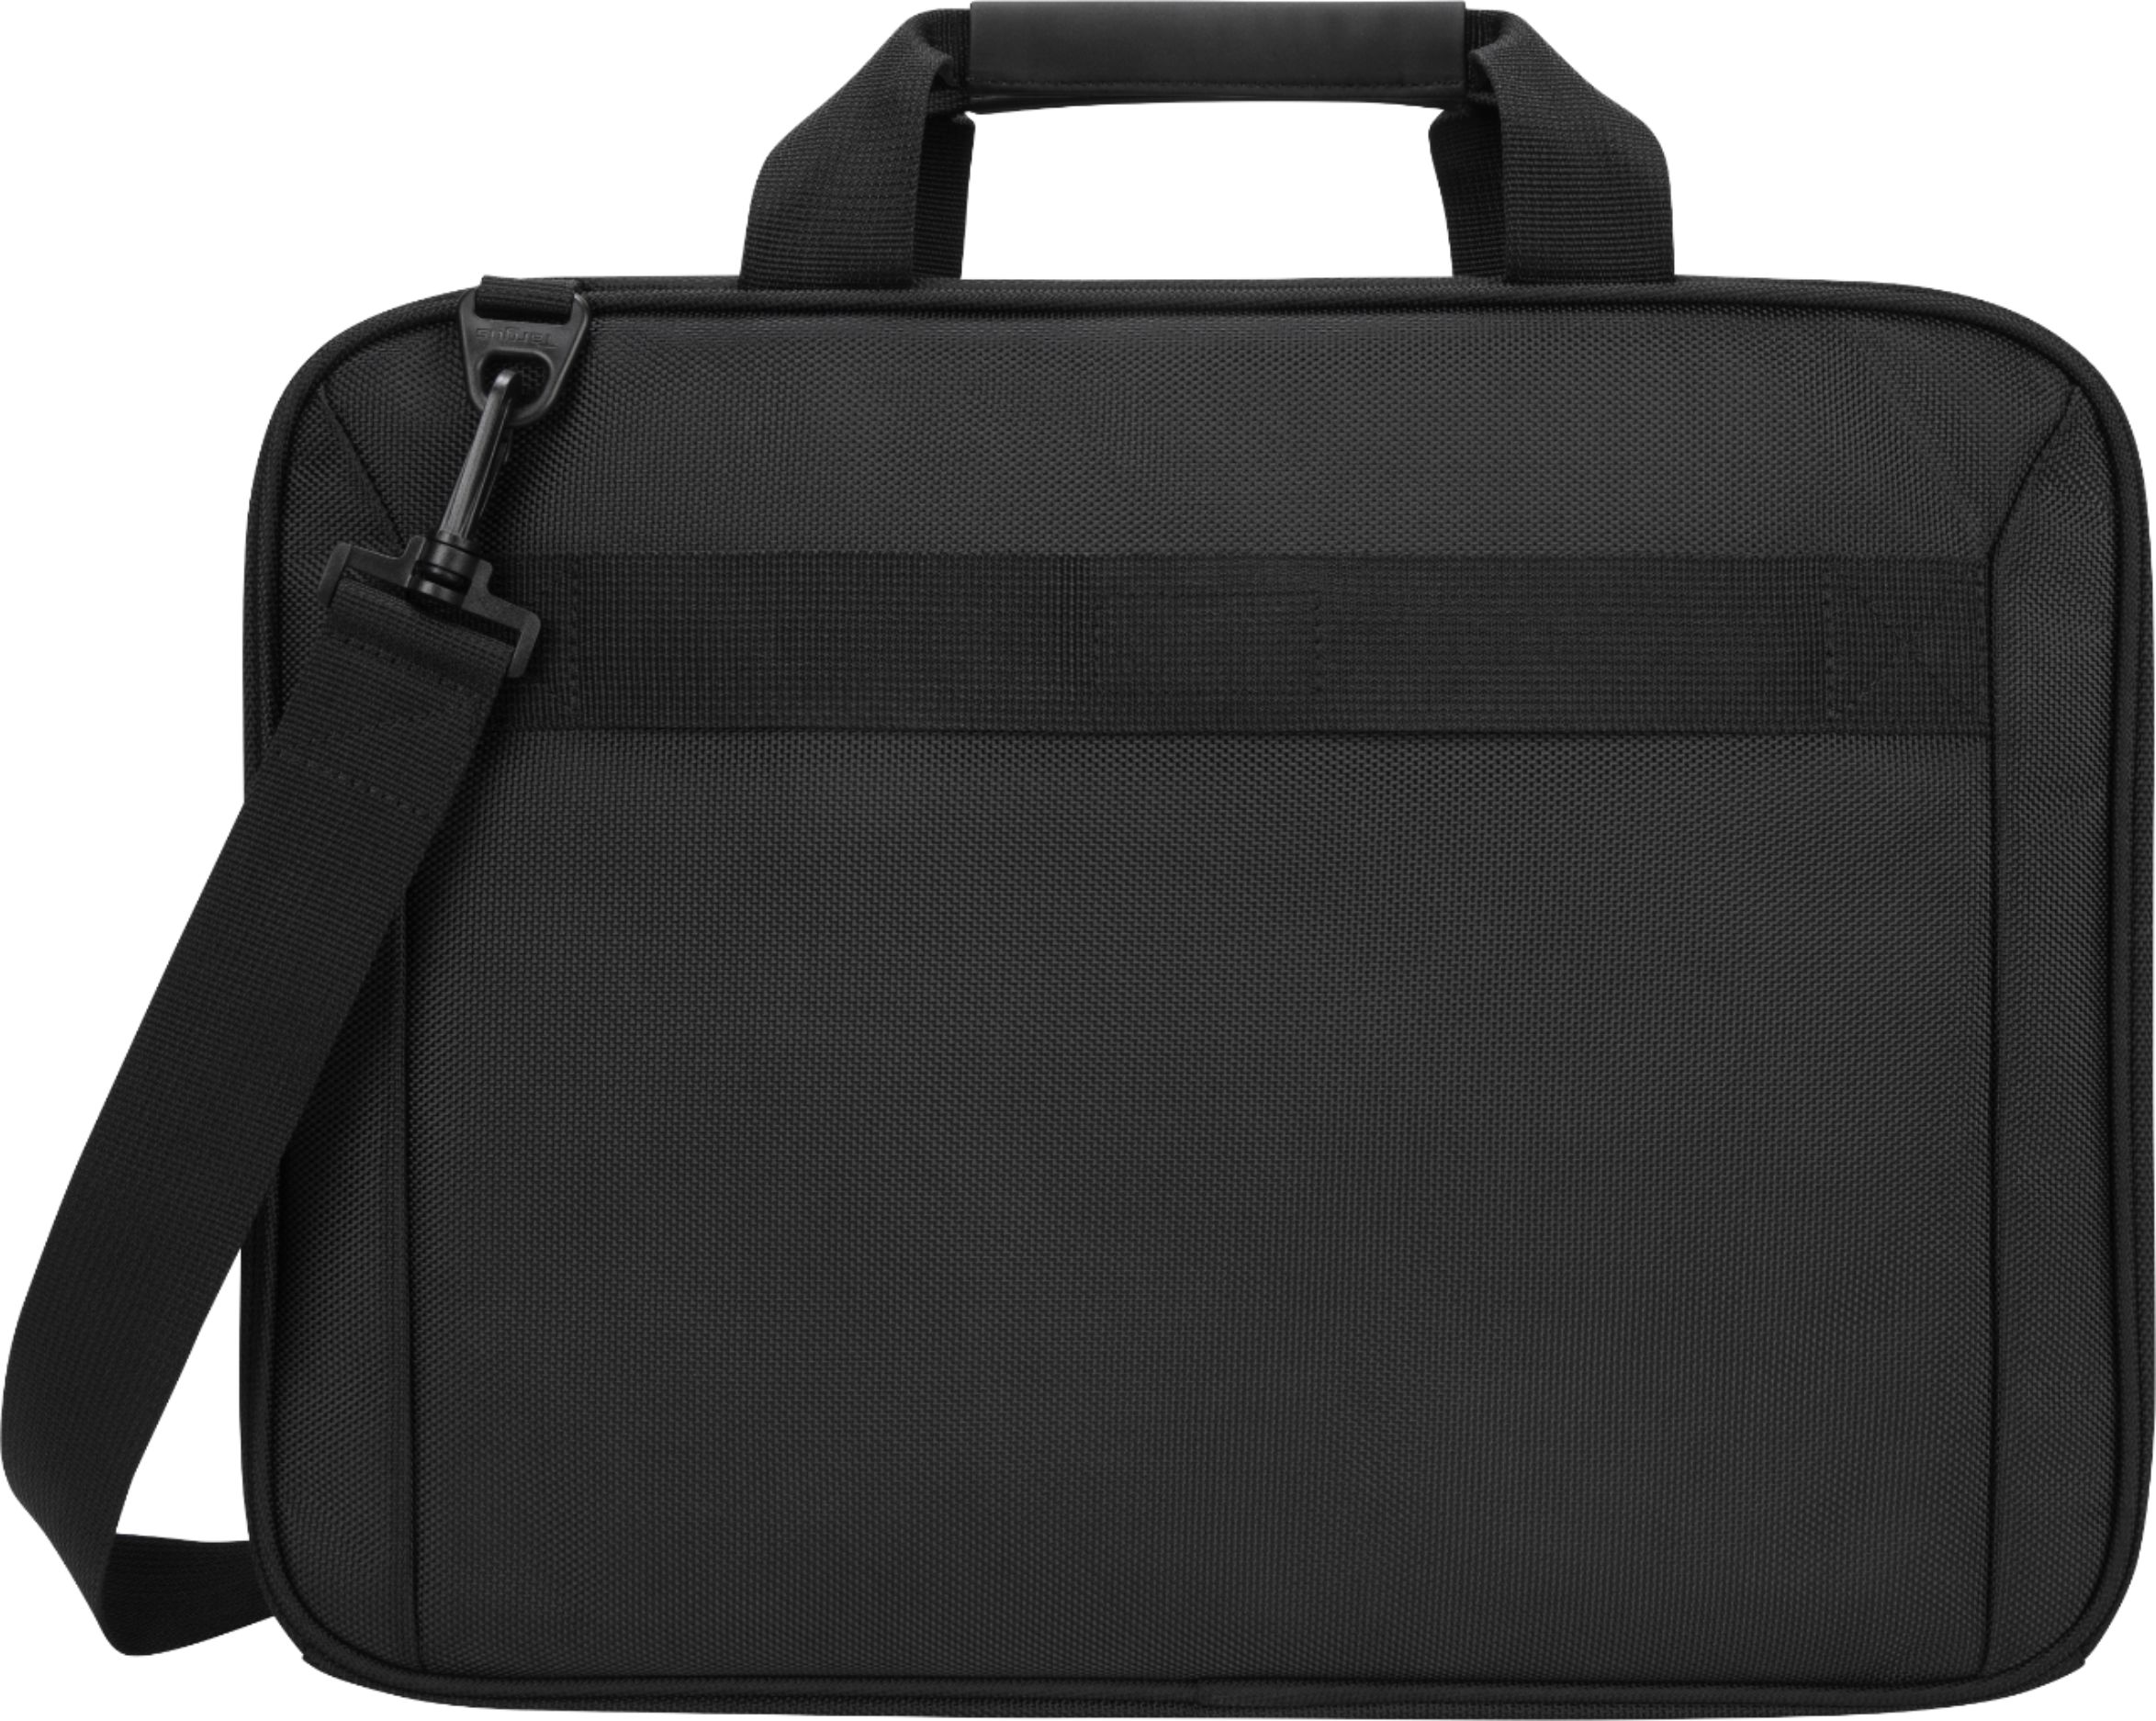 Back View: Targus - Slipcase Sleeve for 16" Laptop - Black/Gray